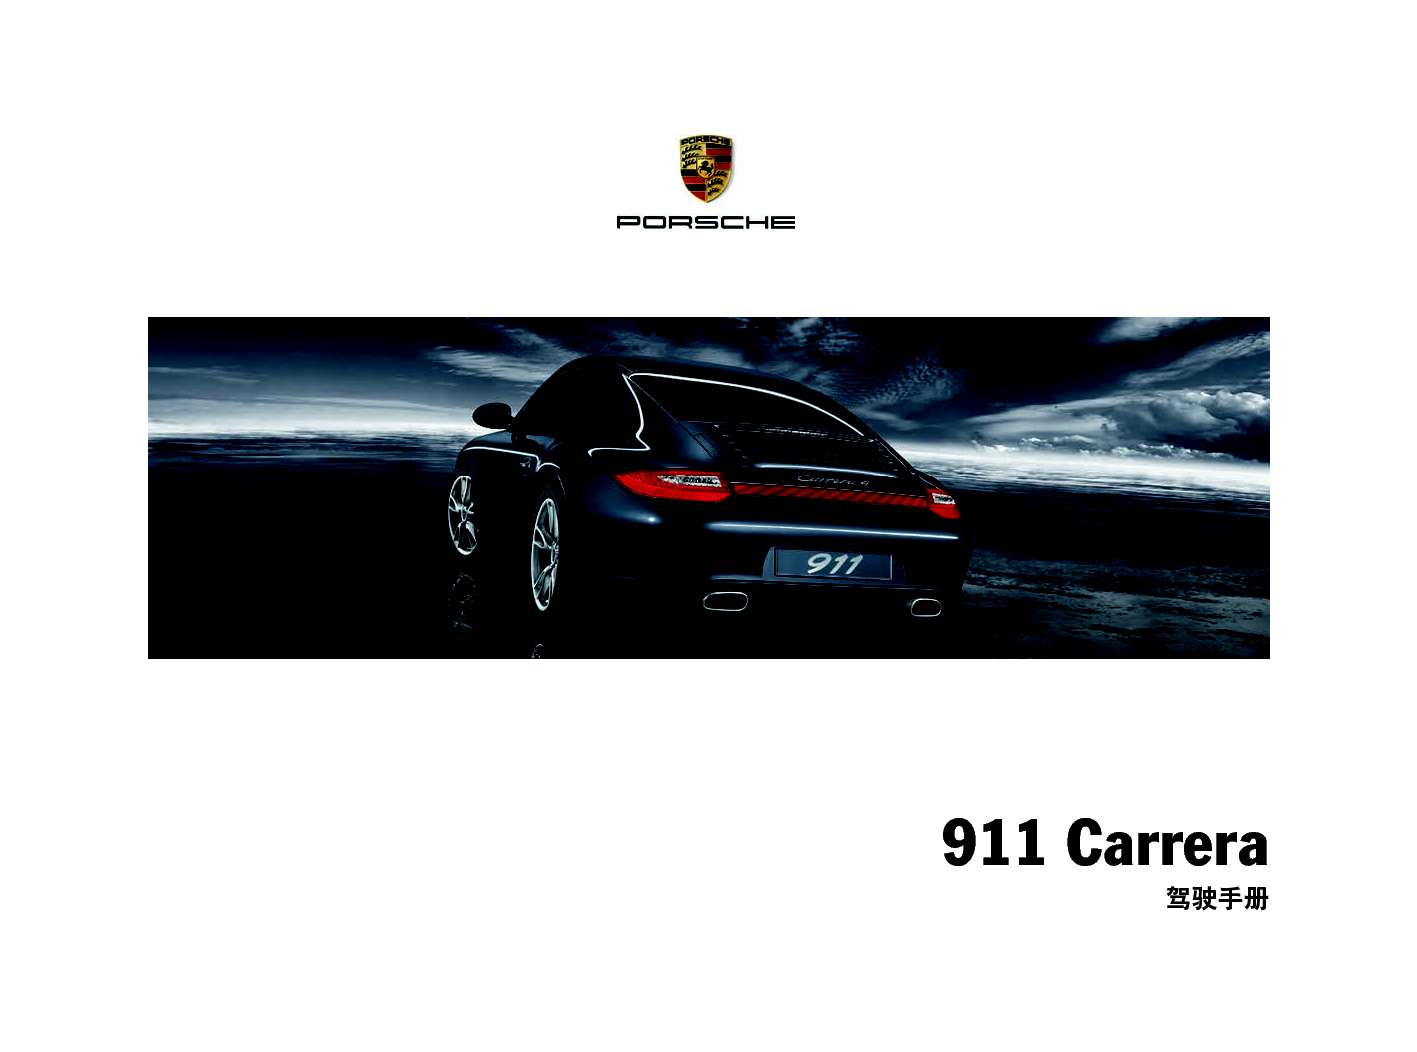 保时捷 Porsche 911 Carrera 12/2010 使用说明书 封面